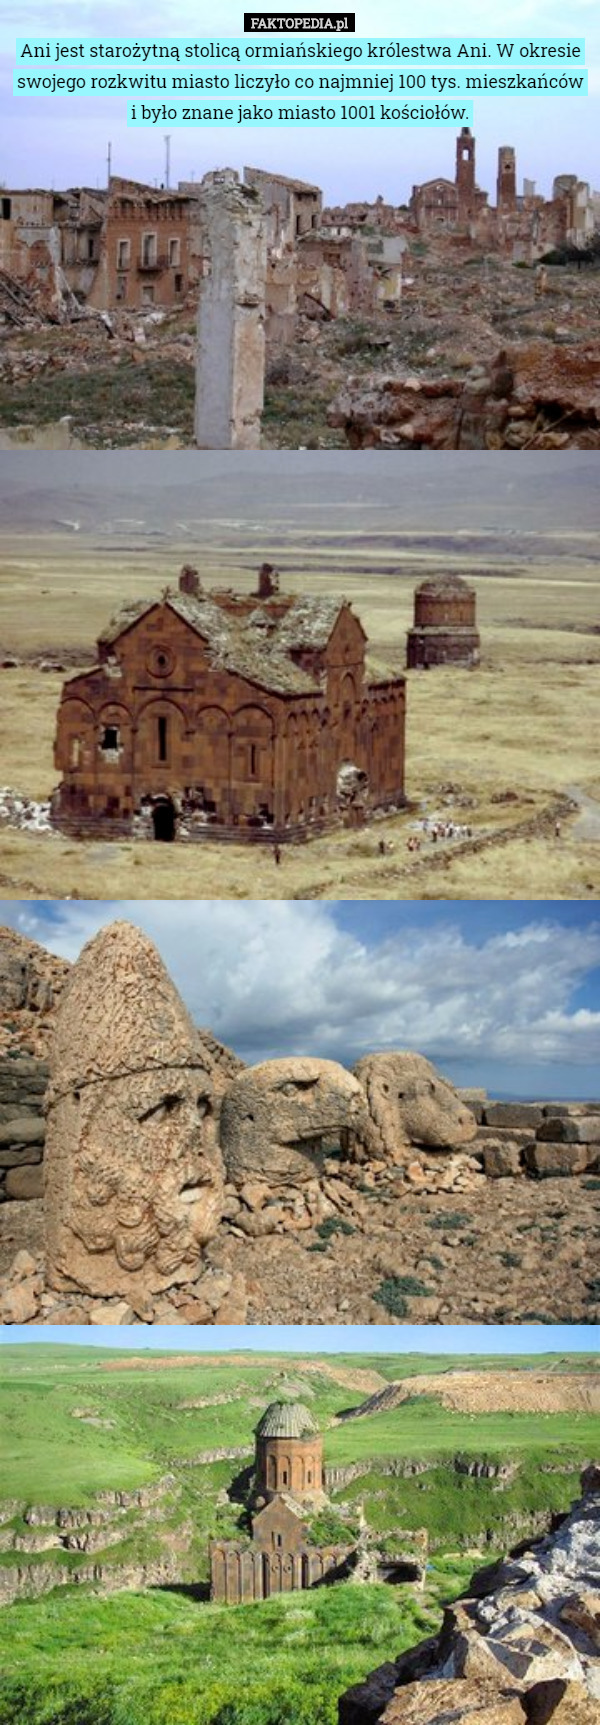 Ani jest starożytną stolicą ormiańskiego królestwa Ani. W okresie swojego rozkwitu miasto liczyło co najmniej 100 tys. mieszkańców i było znane jako miasto 1001 kościołów. 